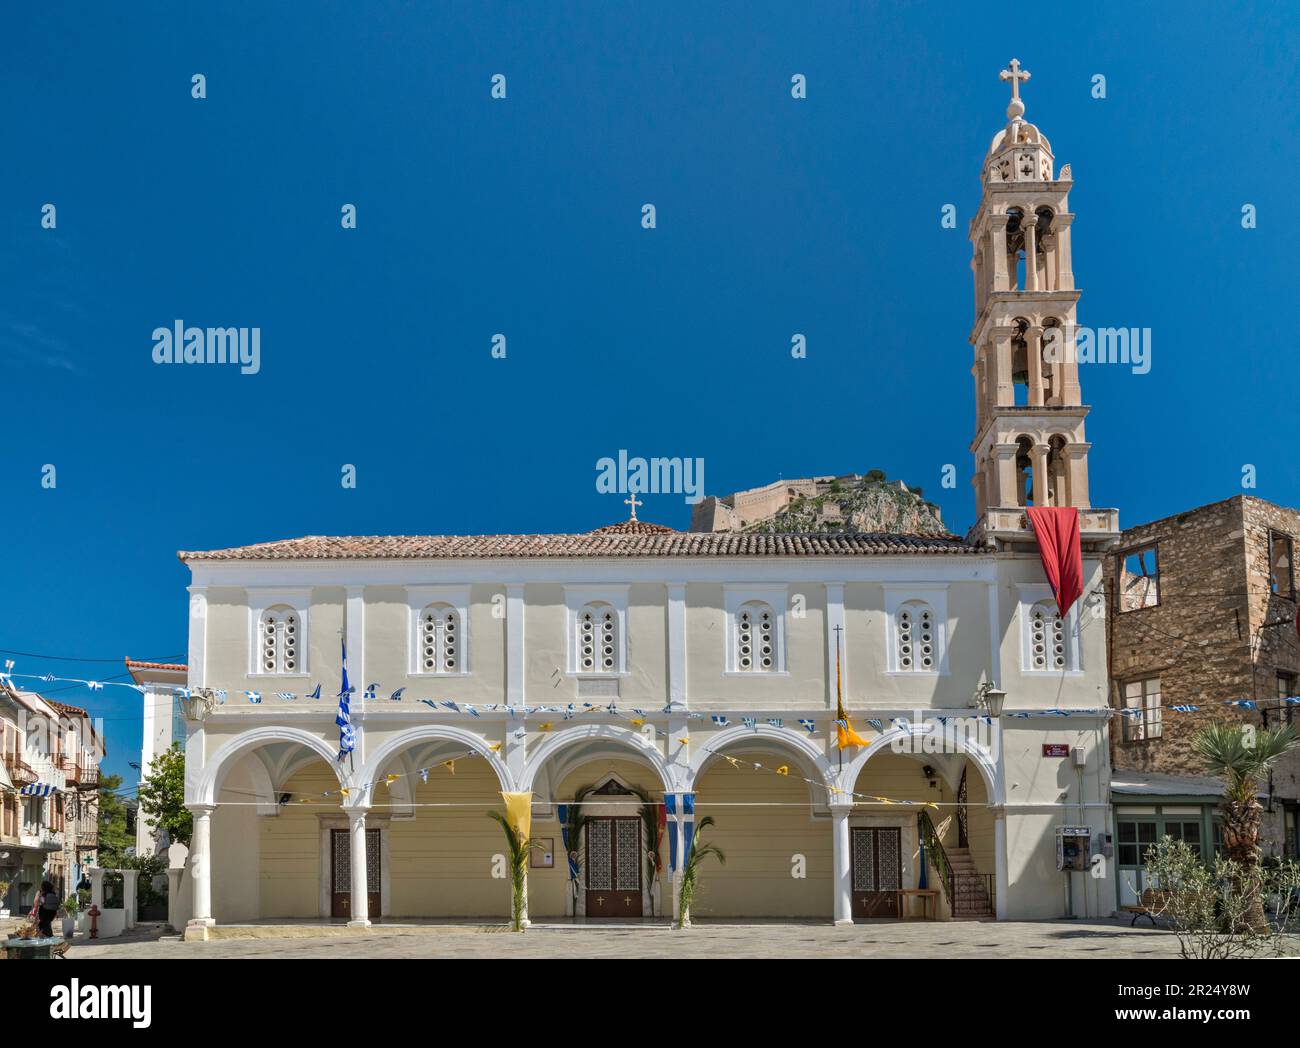 Eglise d'Agios Georgios (St George), Bastion de Robert (Romber) à la forteresse de Palamidi en dist, place AG Georgiou à Nafplio (Nauplie, Nauplie), Grèce Banque D'Images